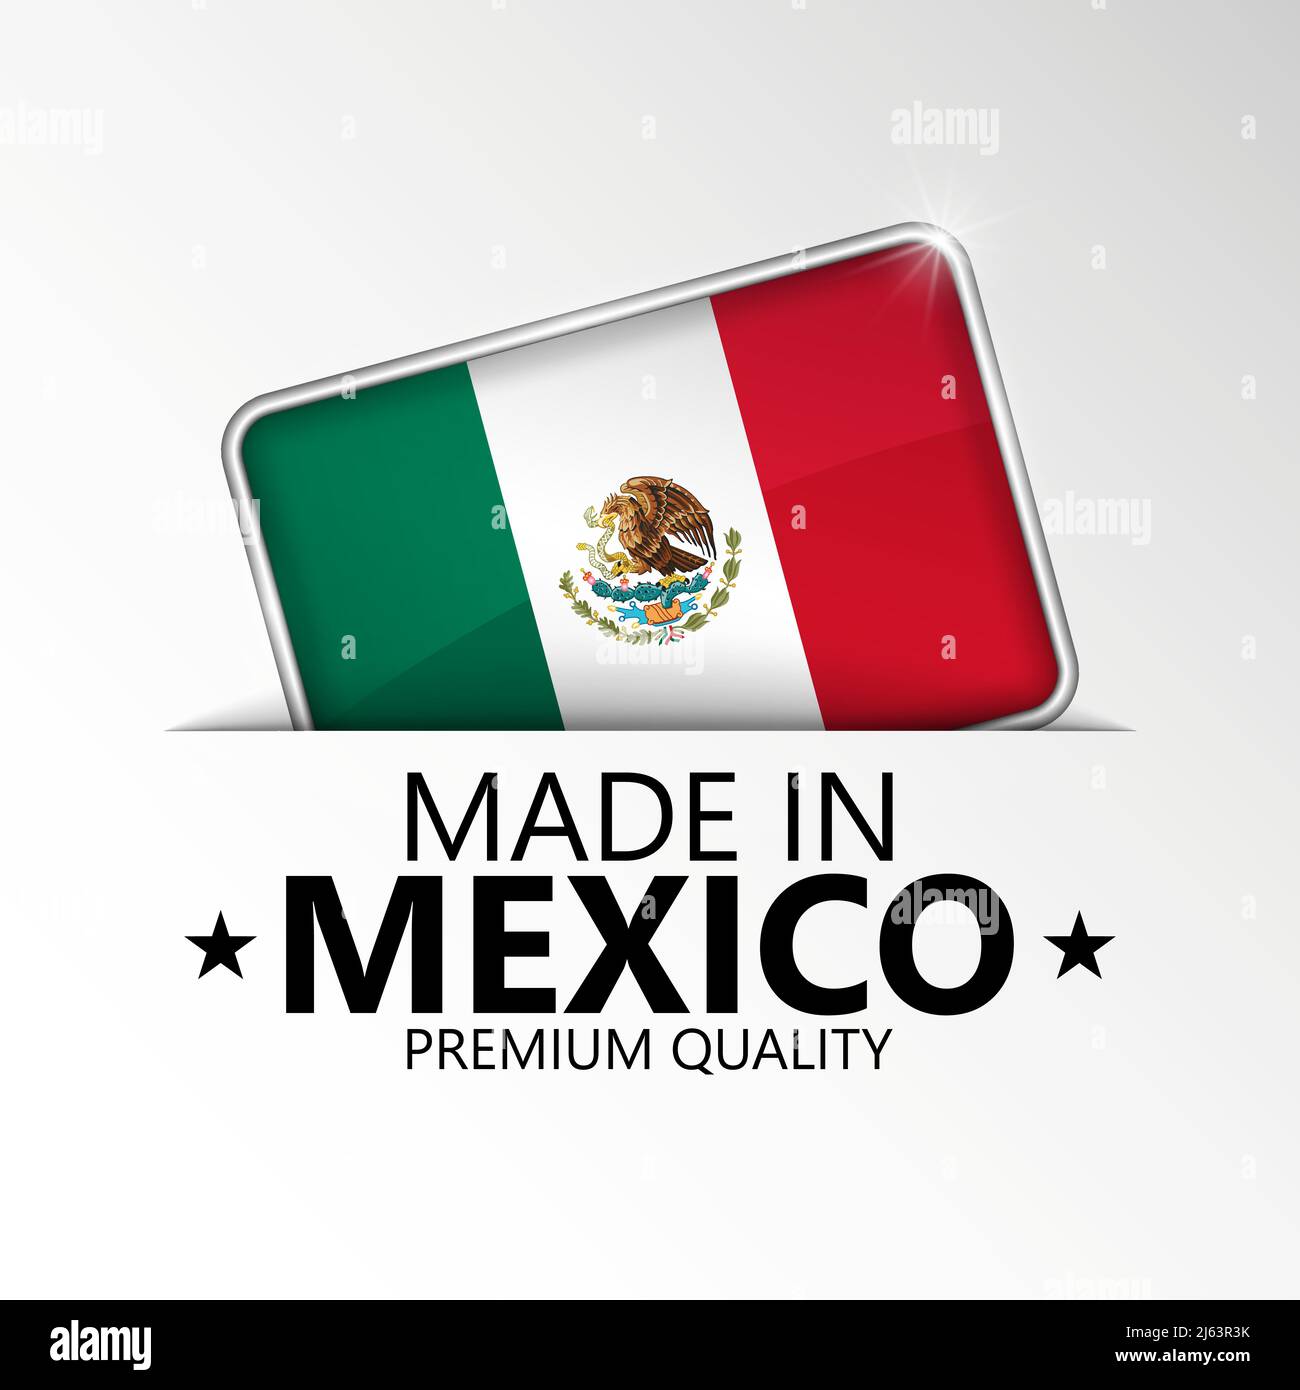 Prodotto in Messico grafica ed etichetta. Elemento di impatto per l'uso che si desidera fare di esso. Illustrazione Vettoriale